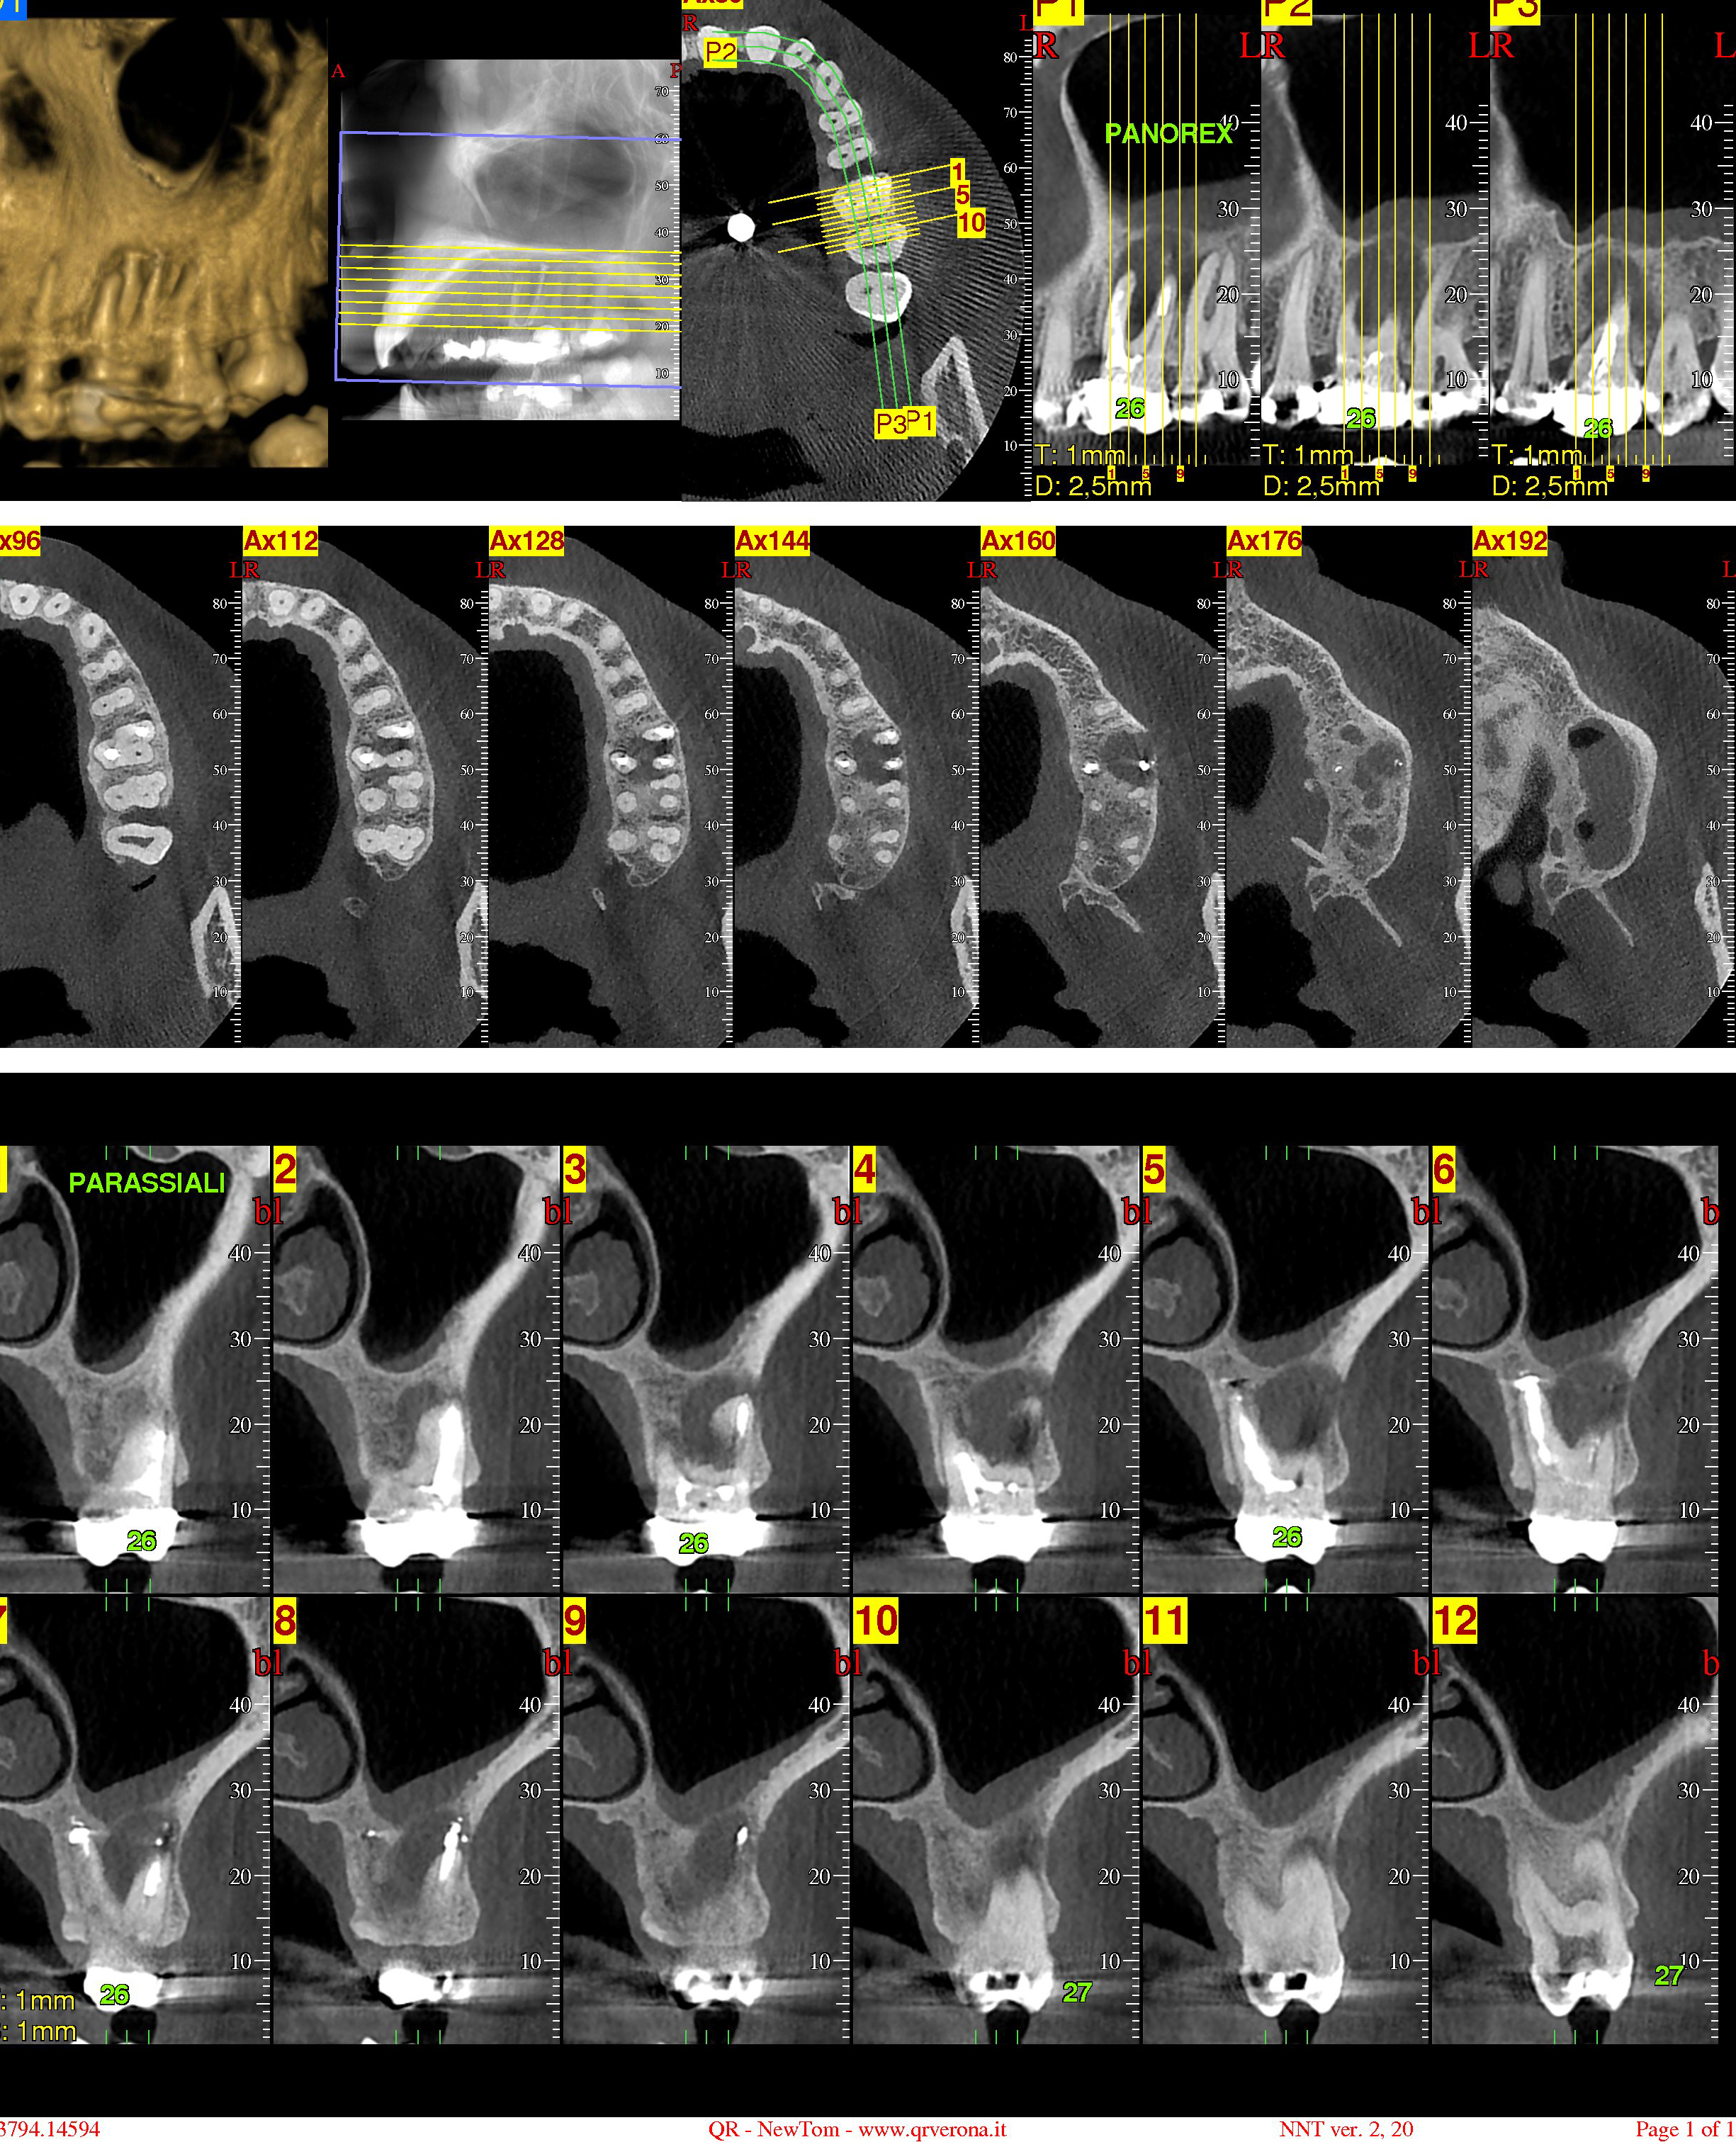 Ho effettuato una tomografia computerizzata del mascellare superiore di sx